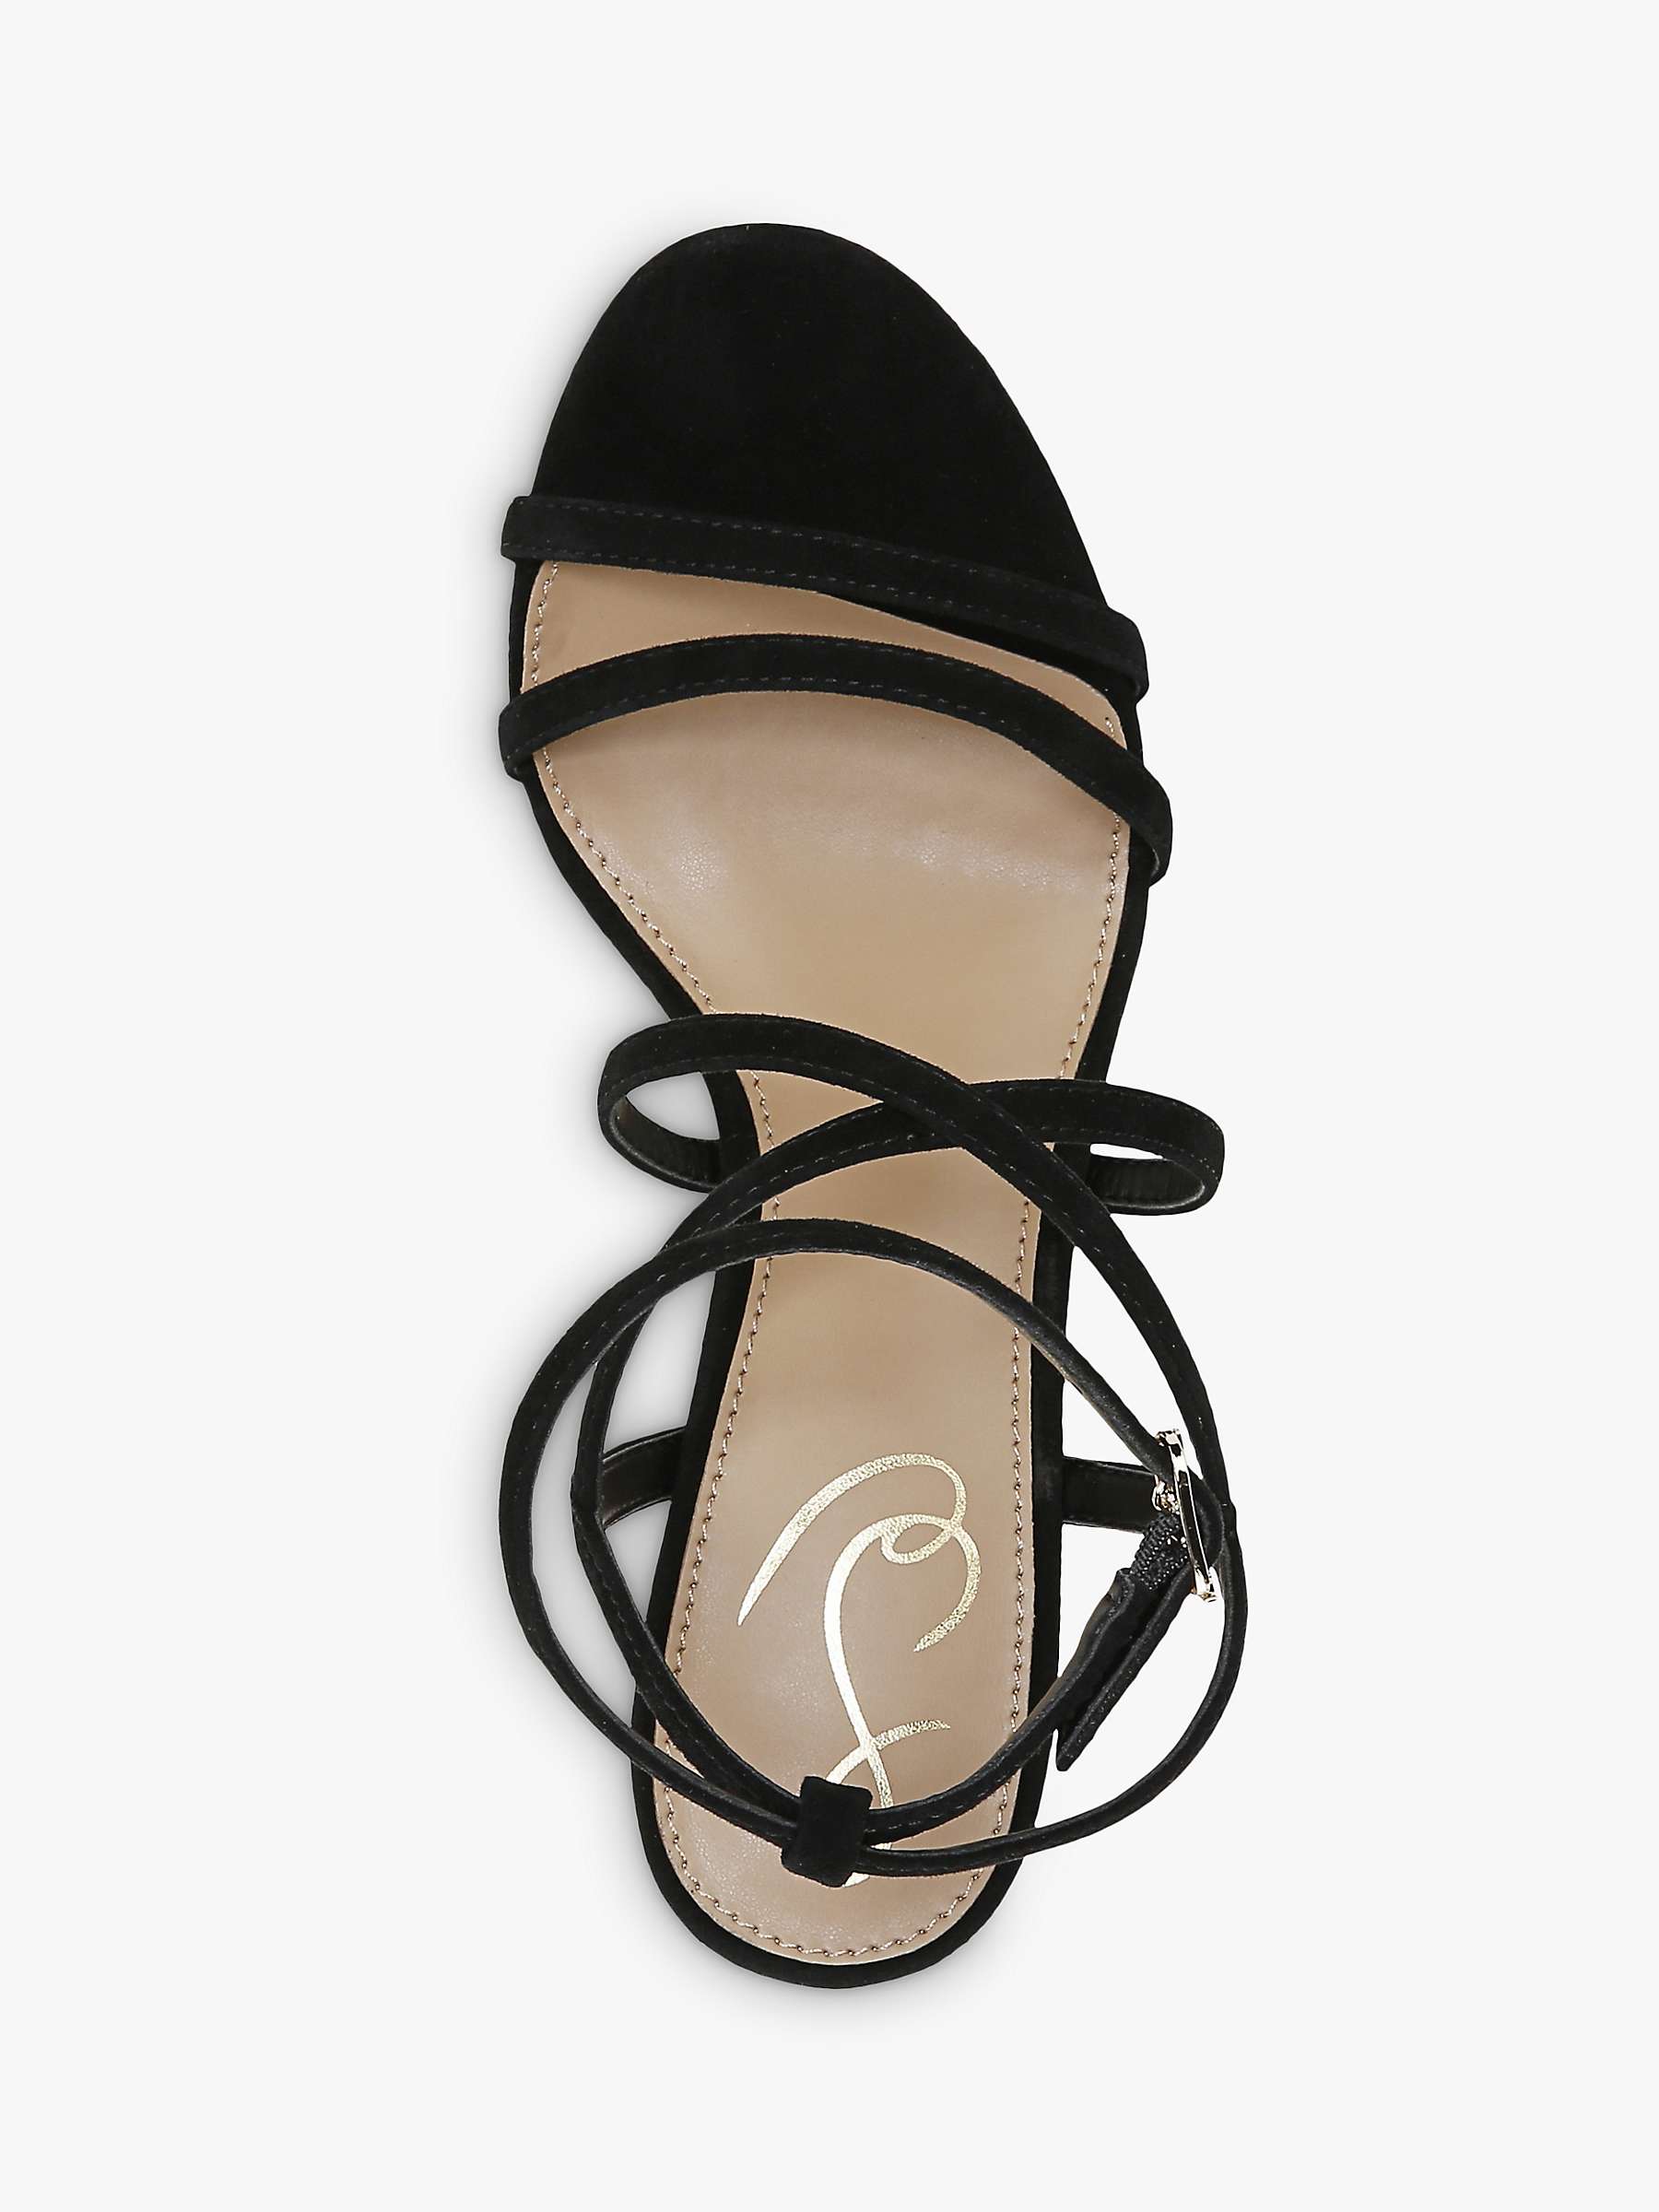 Buy Sam Edelman Delanie Stiletto Heel Sandals, Black Online at johnlewis.com